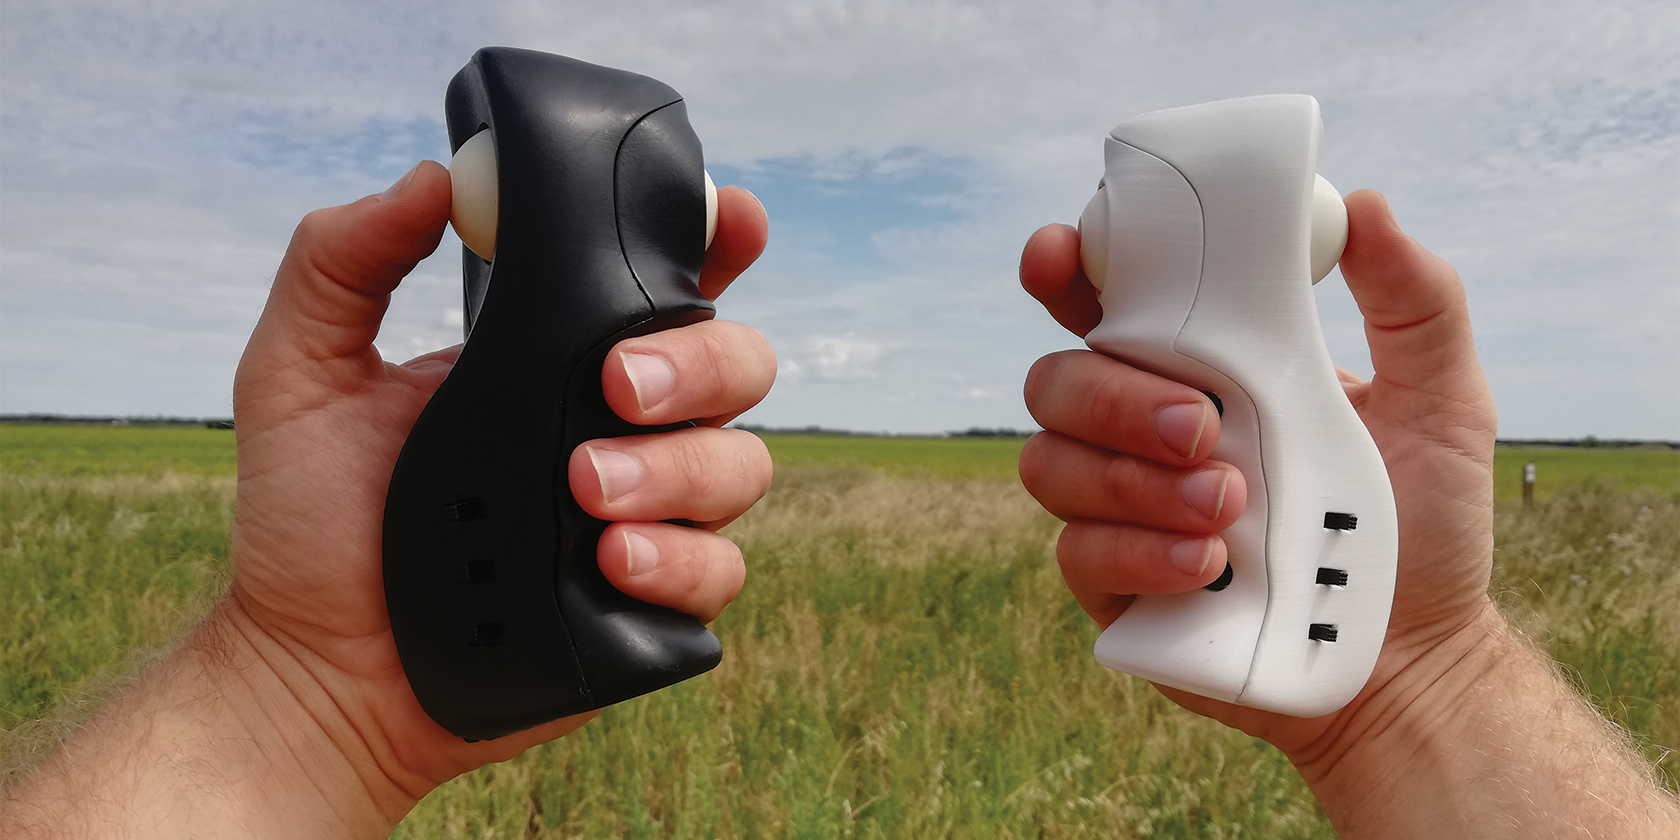 knuckles5 black and white variants in hand - Il Knuckles-5 può controllare il tuo drone e i tuoi videogiochi